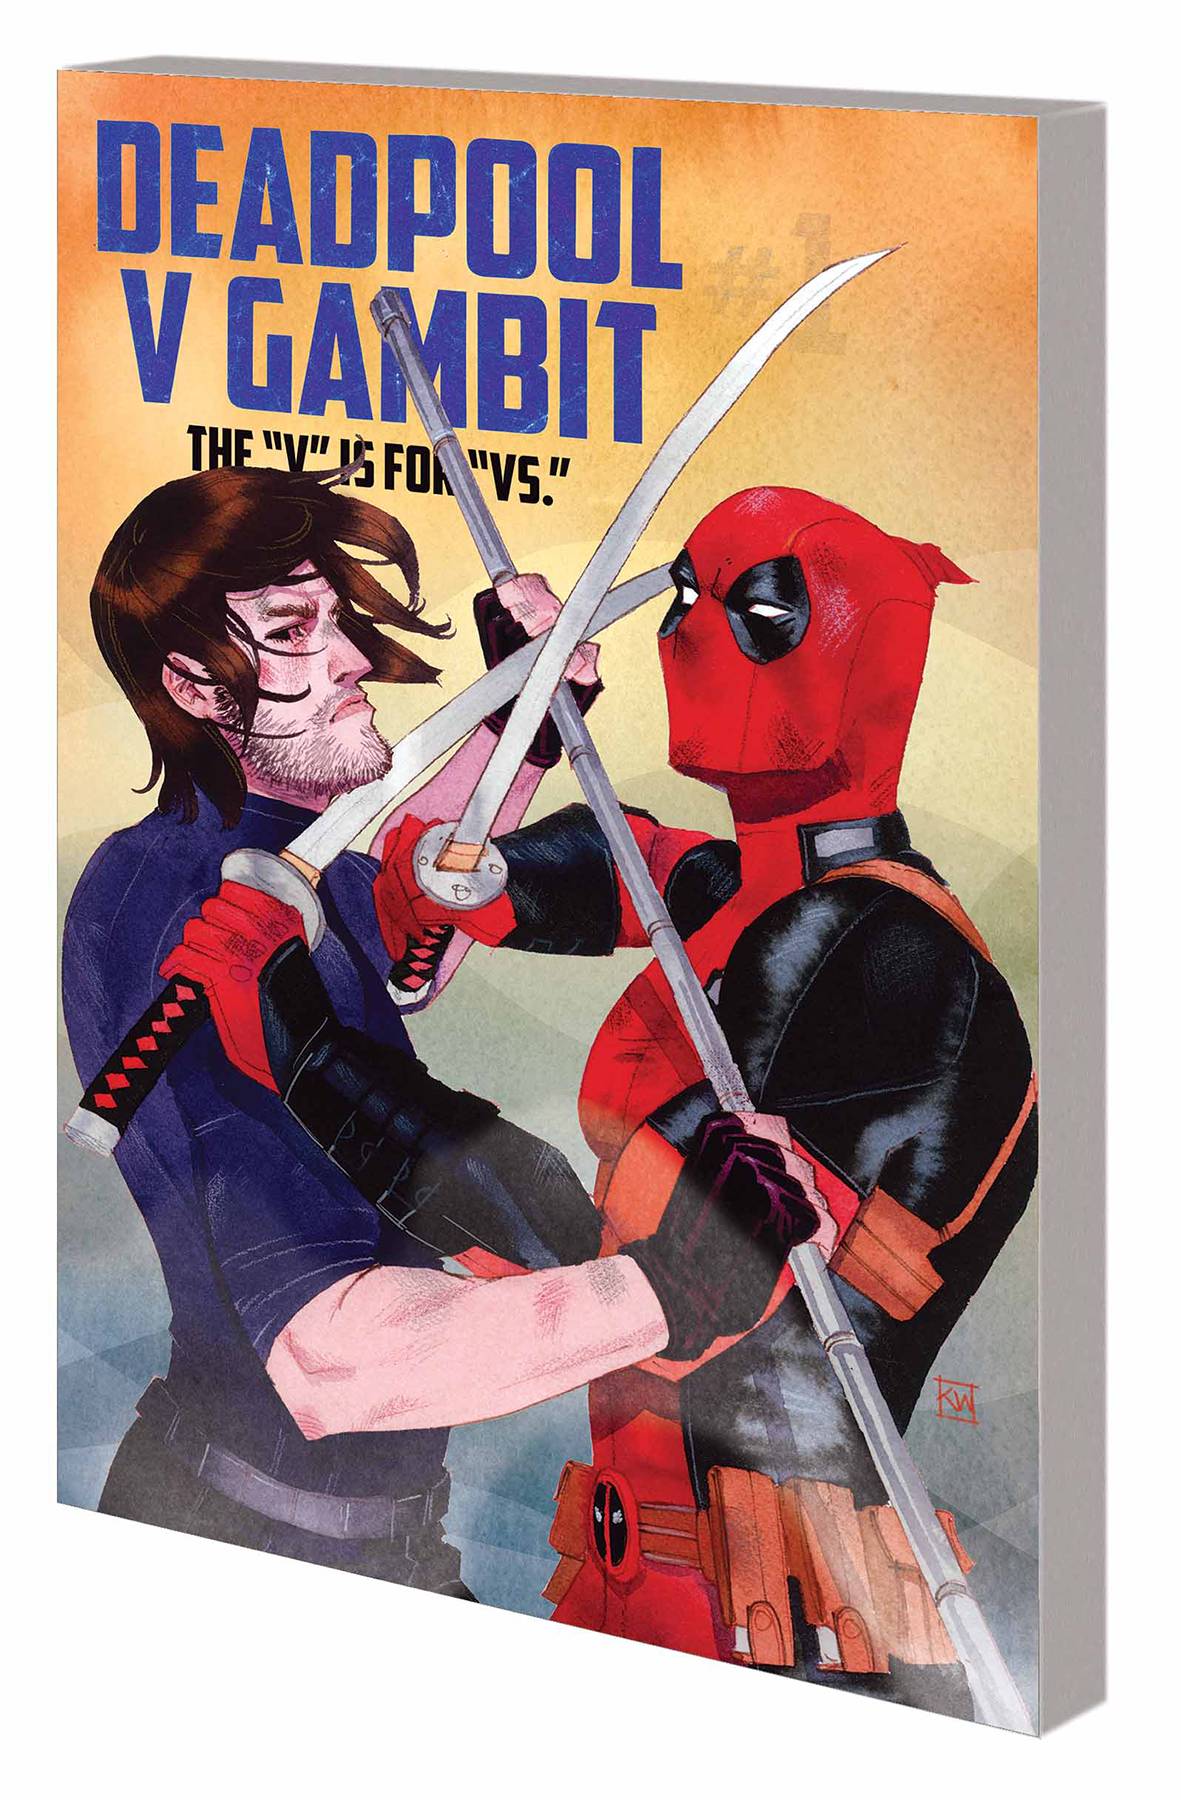 Deadpool V Gambit Graphic Novel V Is for Vs